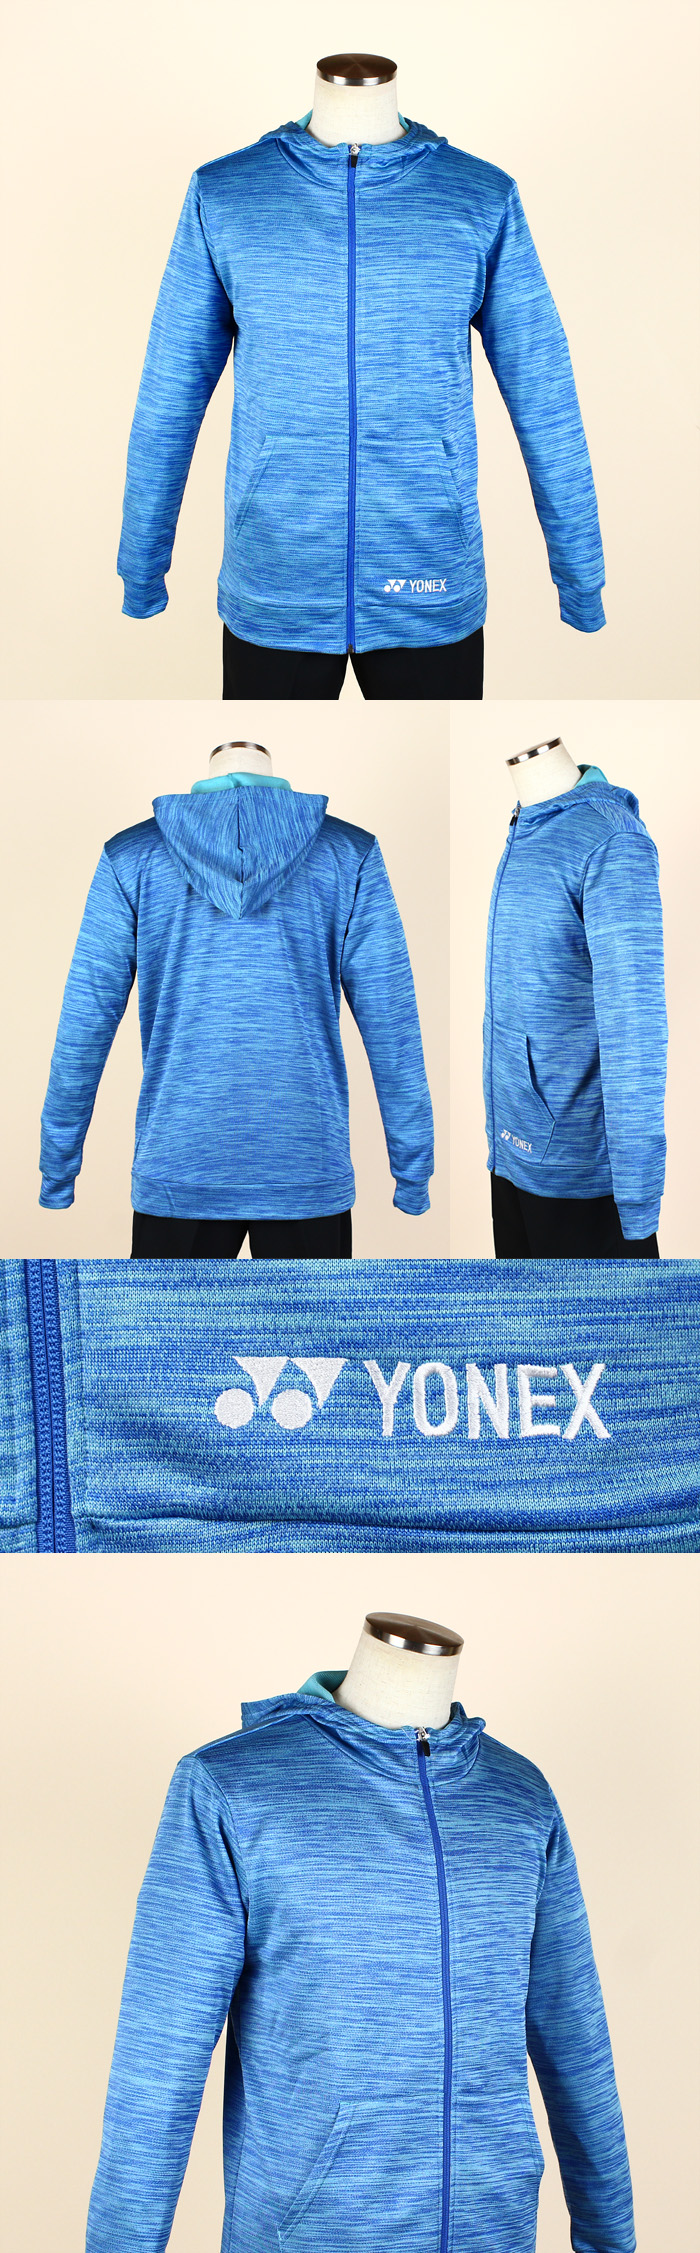 YONEX ヨネックス スウェット セーター M ライムイエロー トレーナー